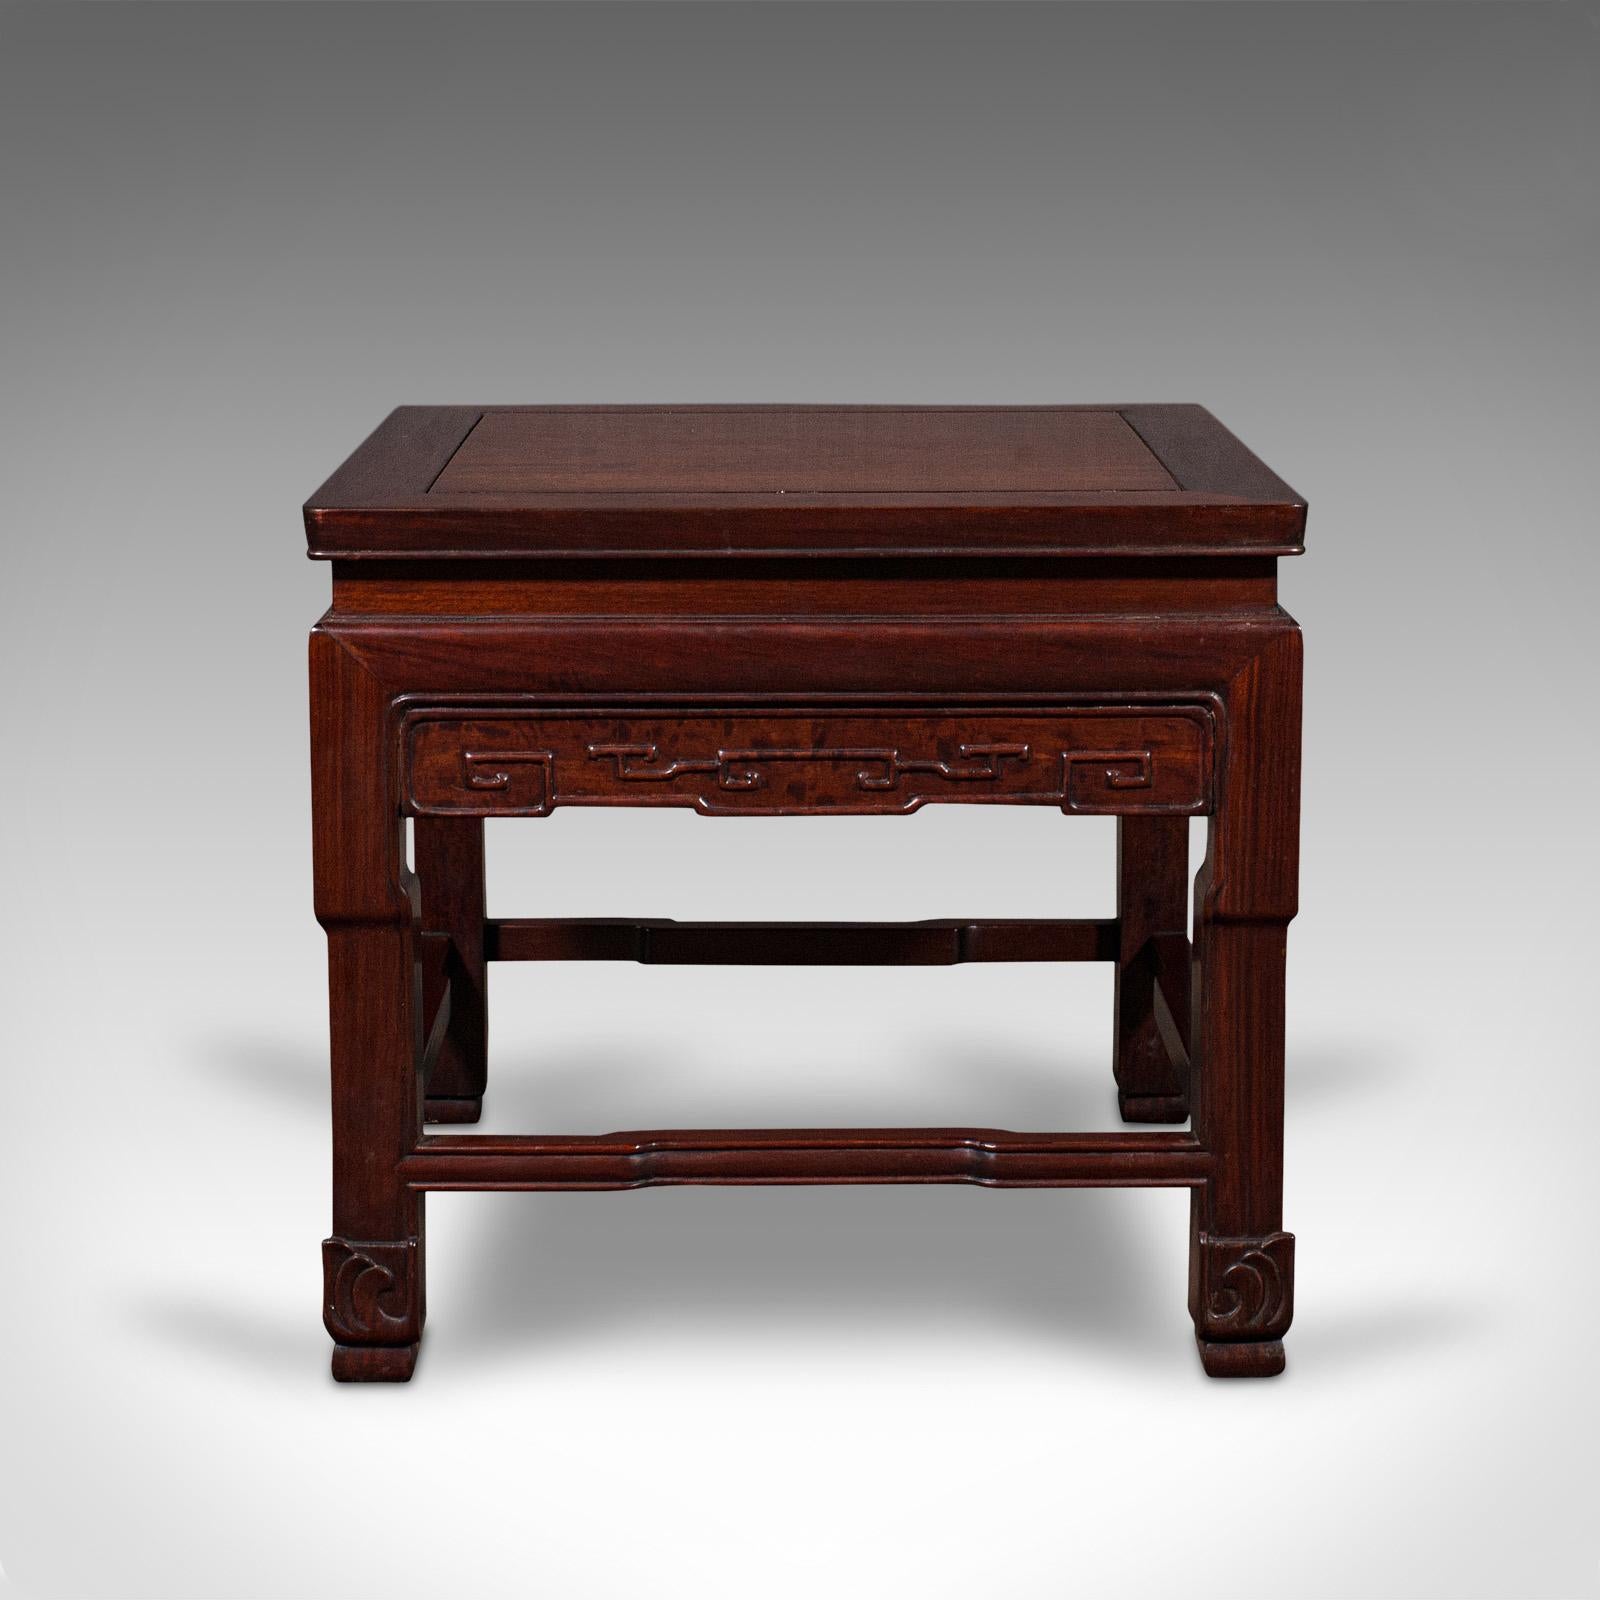 Wood Pair of Vintage Bedside Tables, Oriental, Nightstand, Side, Coffee, Art Deco